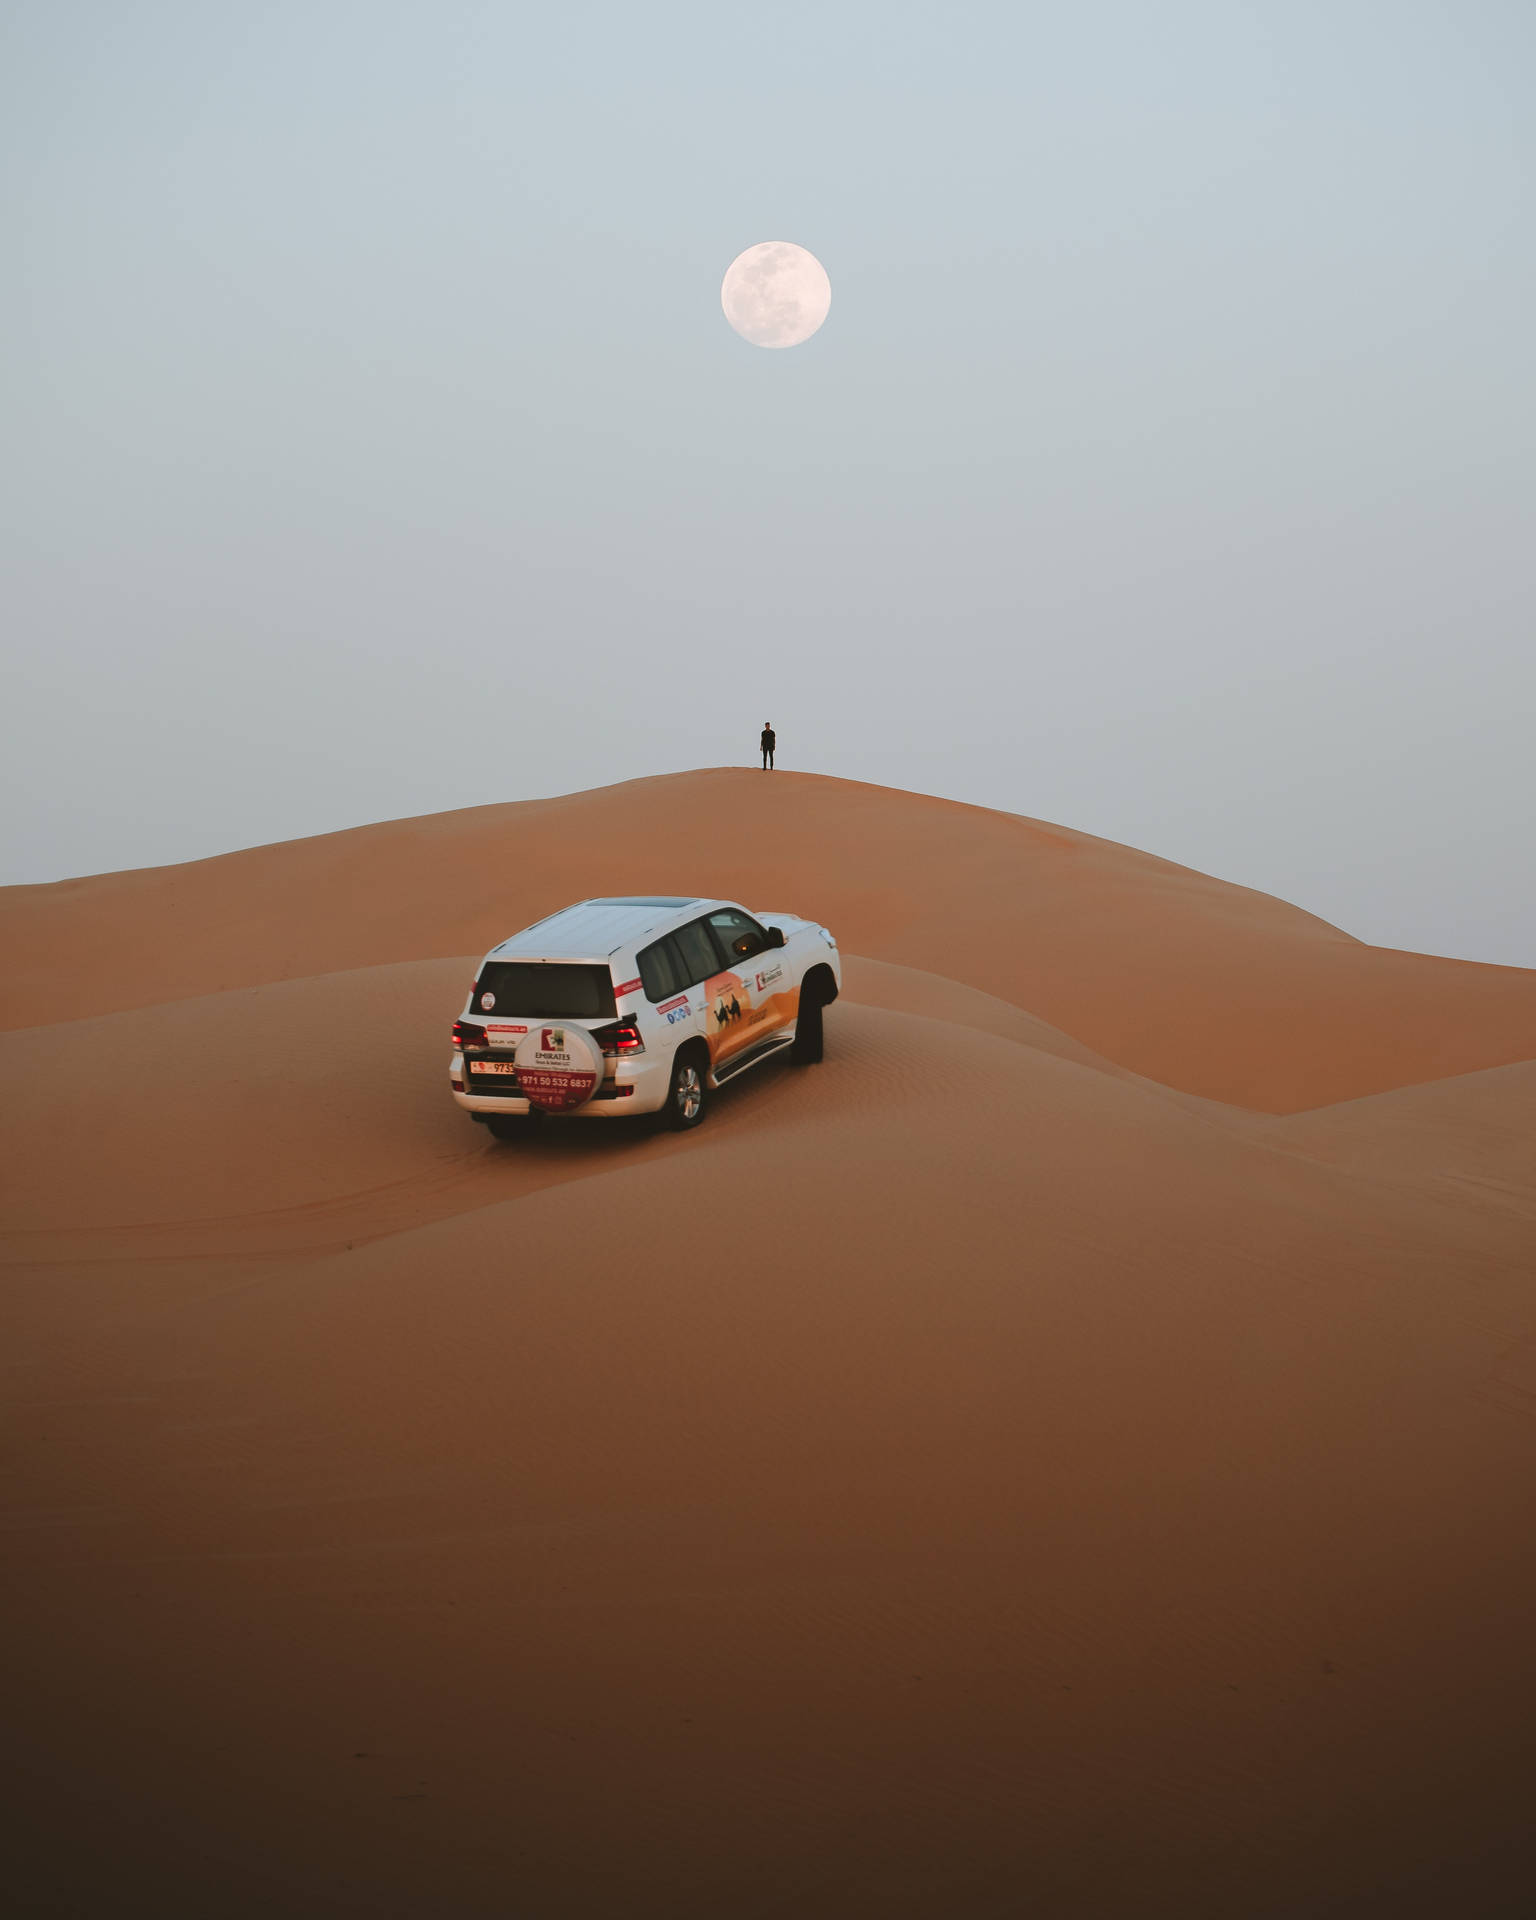 Full Moon In Desert